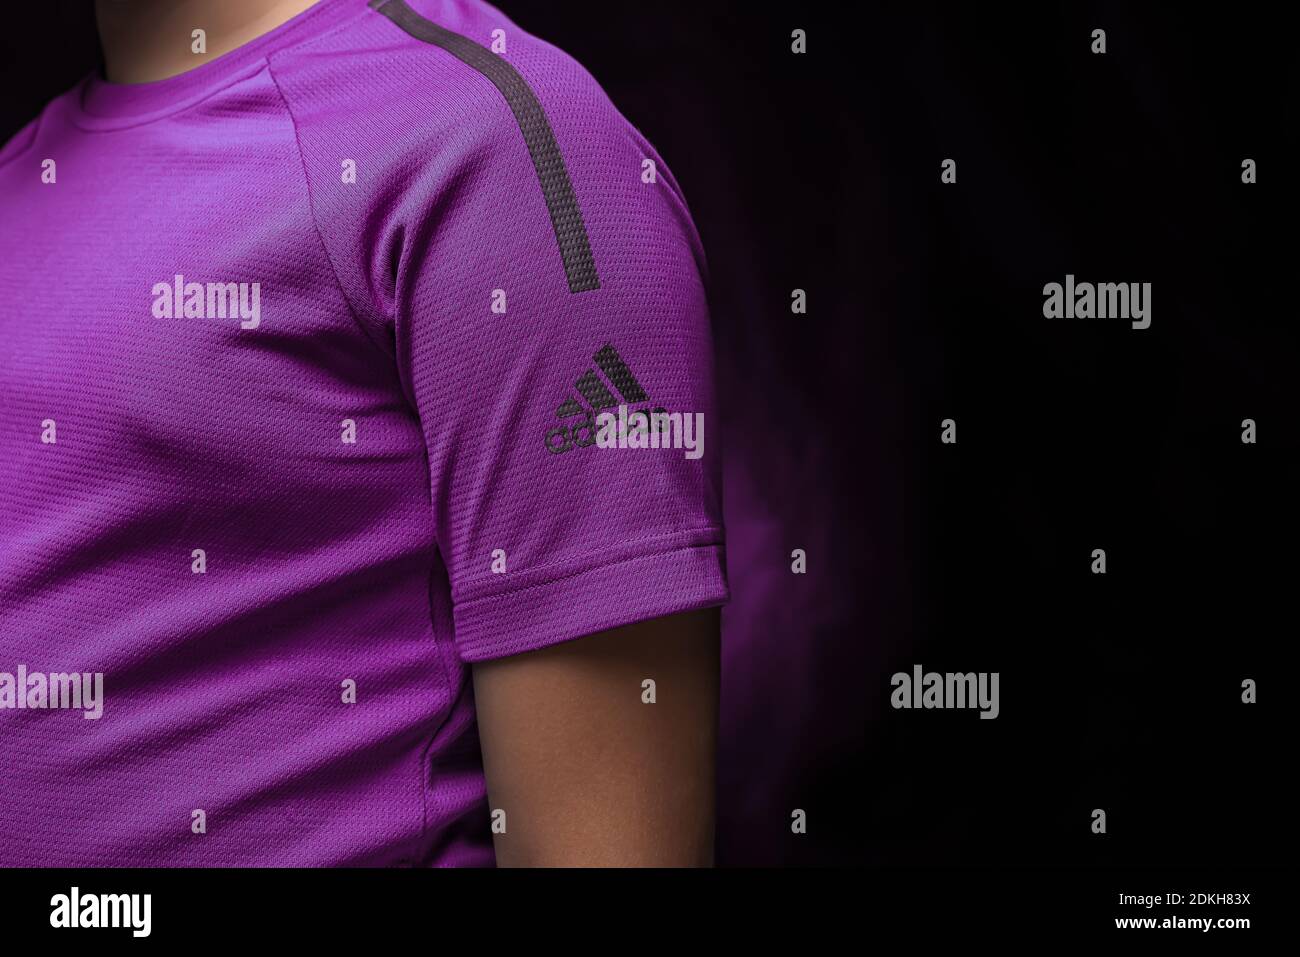 Violett und lila Sport stylisches T-Shirt von adidas Mit Logo auf schwarzem  Hintergrund mit Hintergrundbeleuchtung Stockfotografie - Alamy